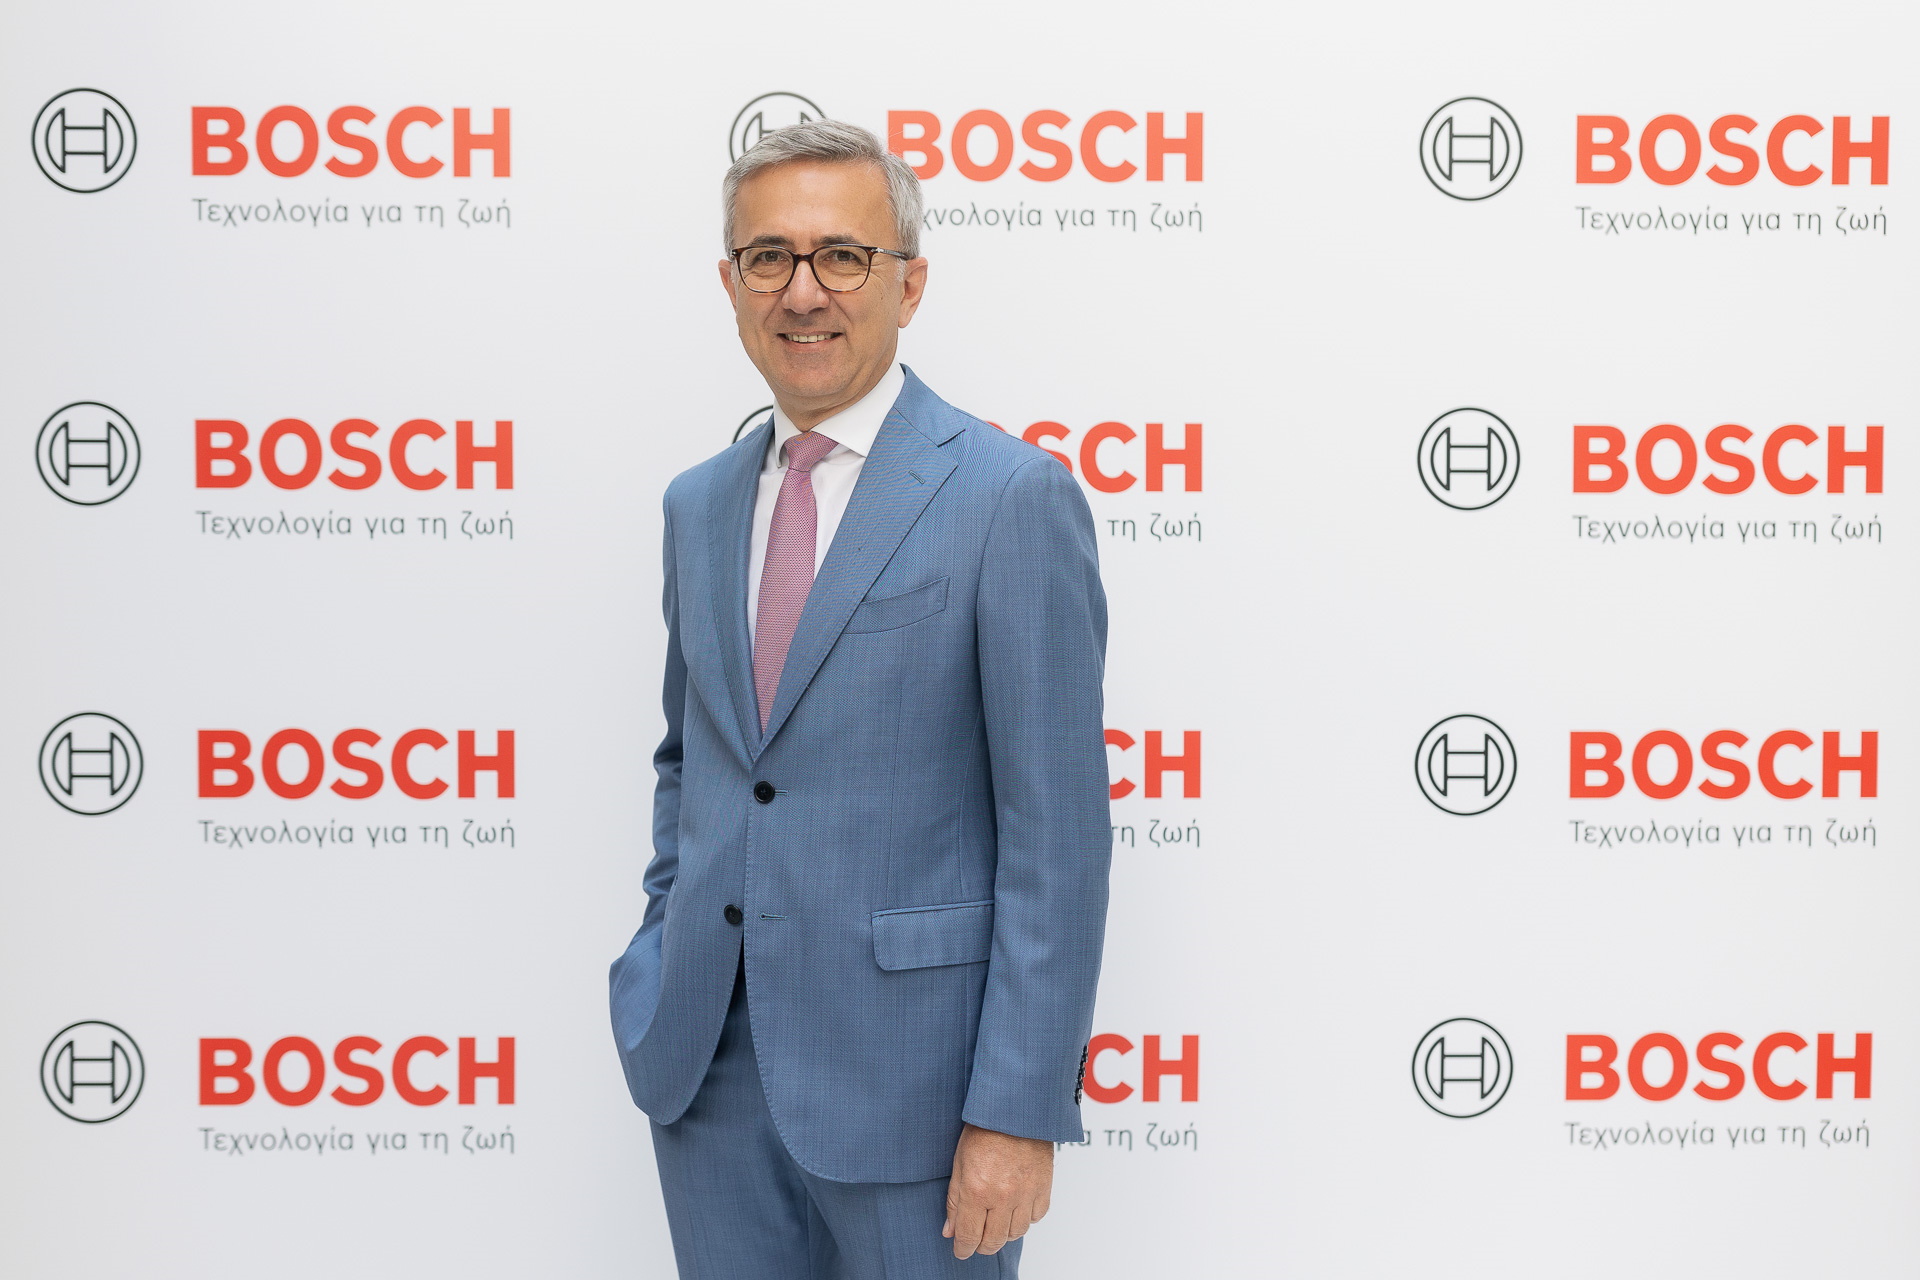 Η Bosch Ελλάδας καταγράφει θετικά αποτελέσματα το 2021 – Τα σχέδια για το 2022